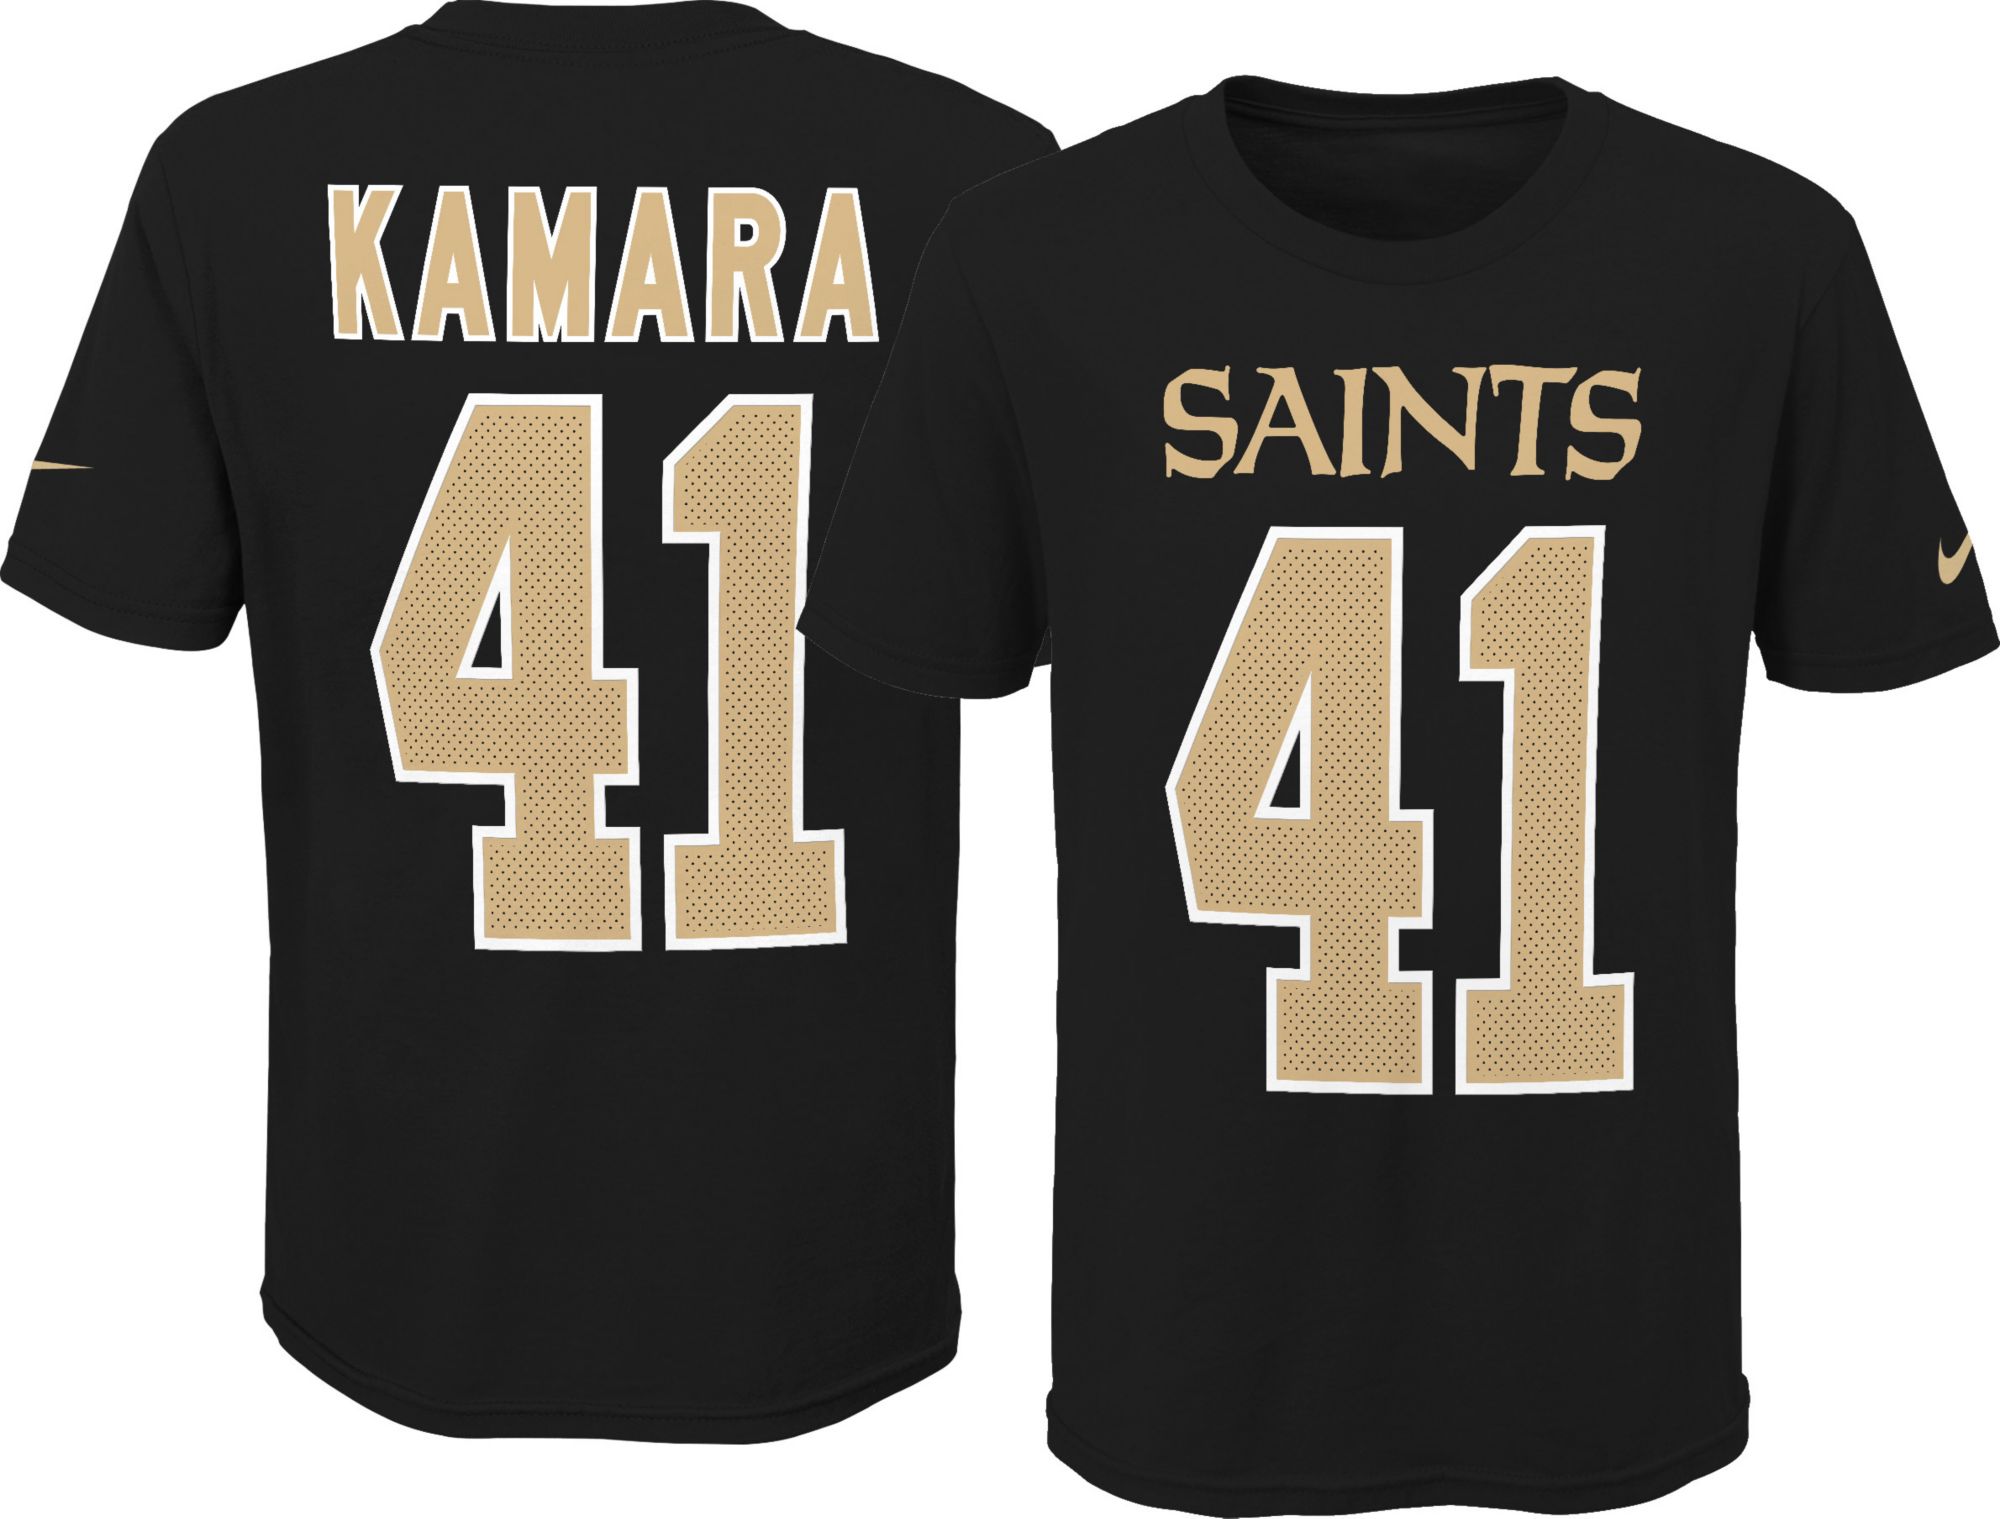 saints kamara shirt